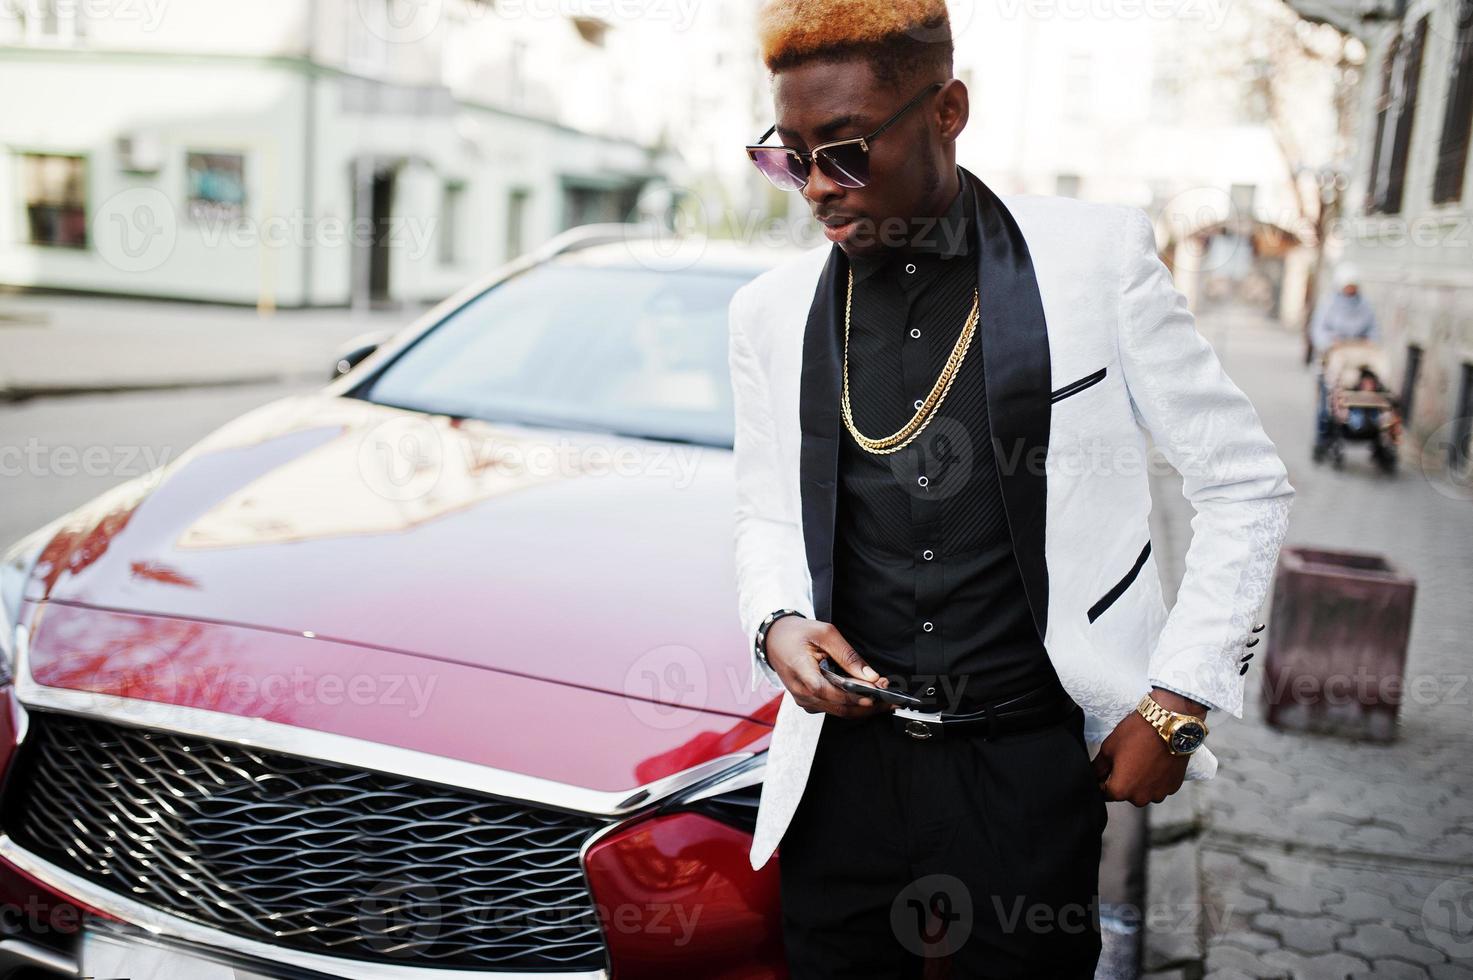 hombre afroamericano elegante y apuesto con traje blanco contra un auto rojo de lujo con teléfono móvil a mano. foto